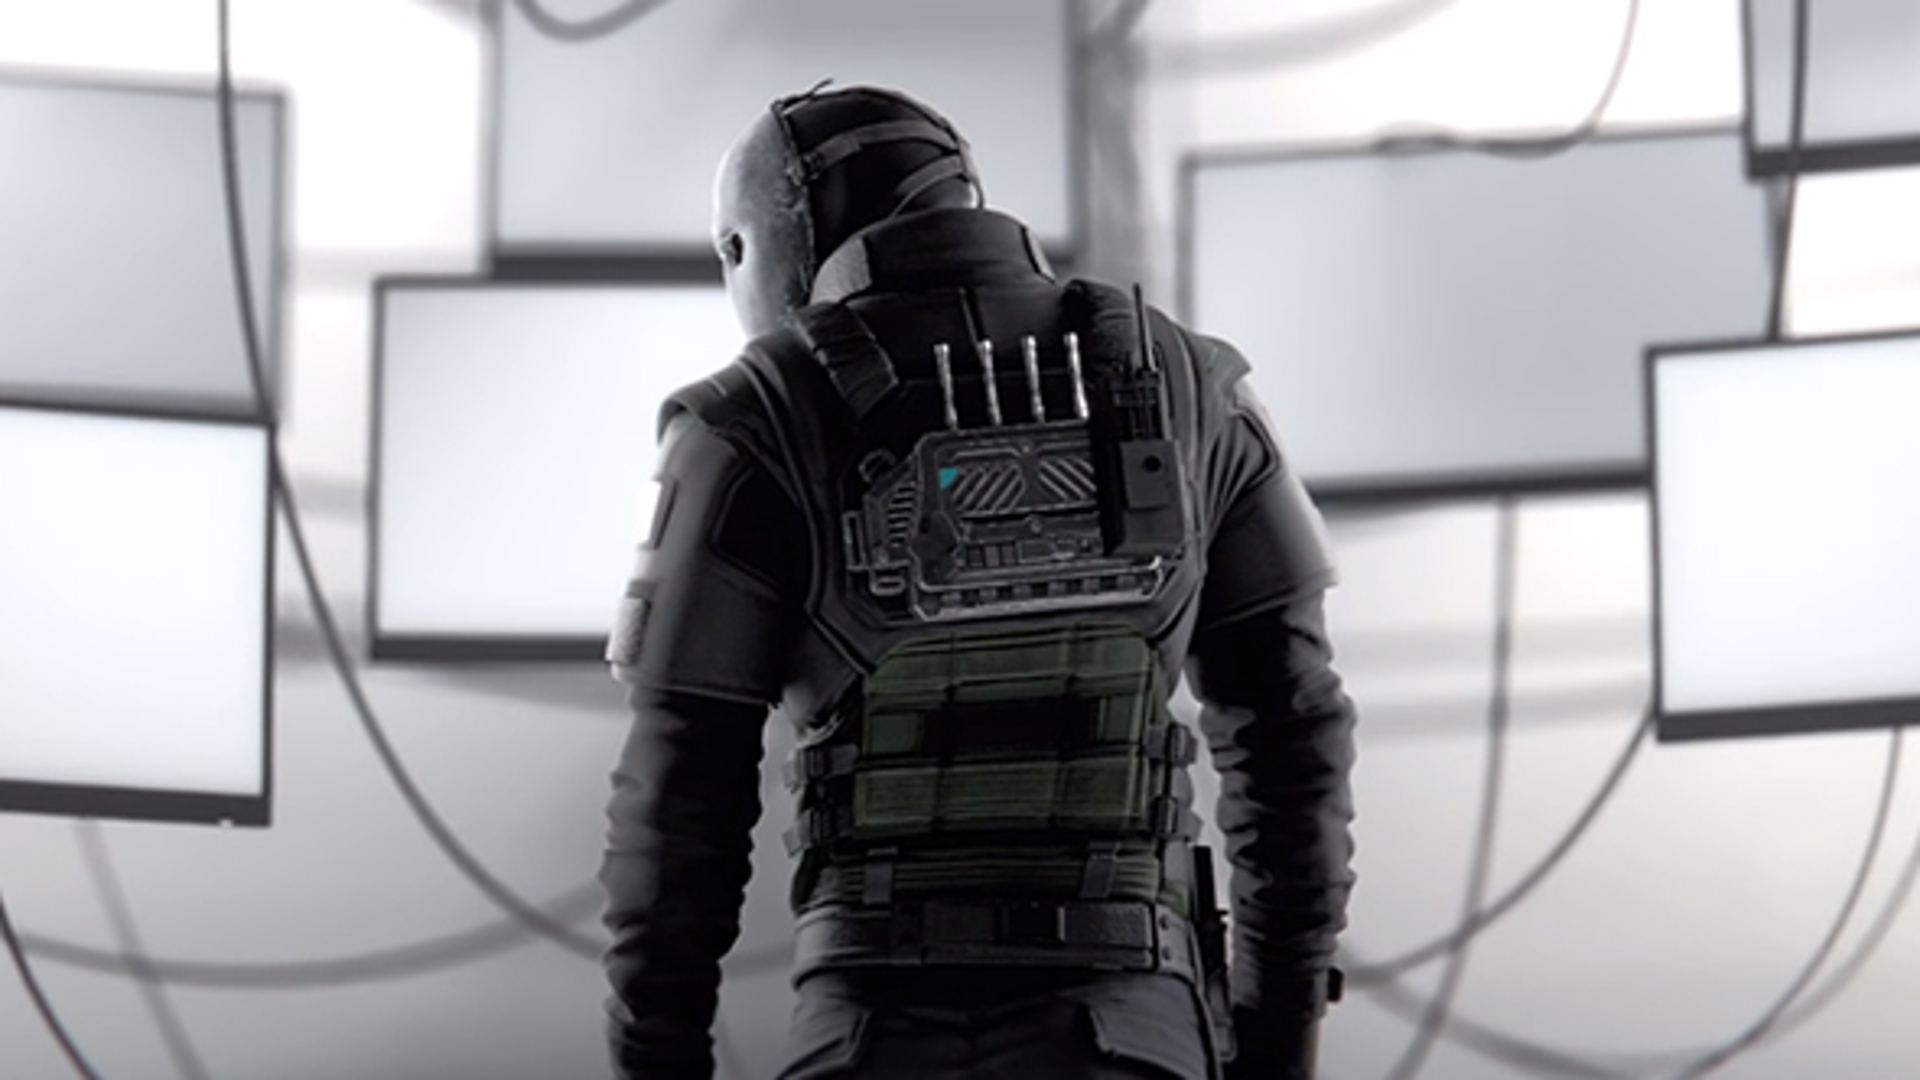 A soldier-like figure dressed in black SWAT gear